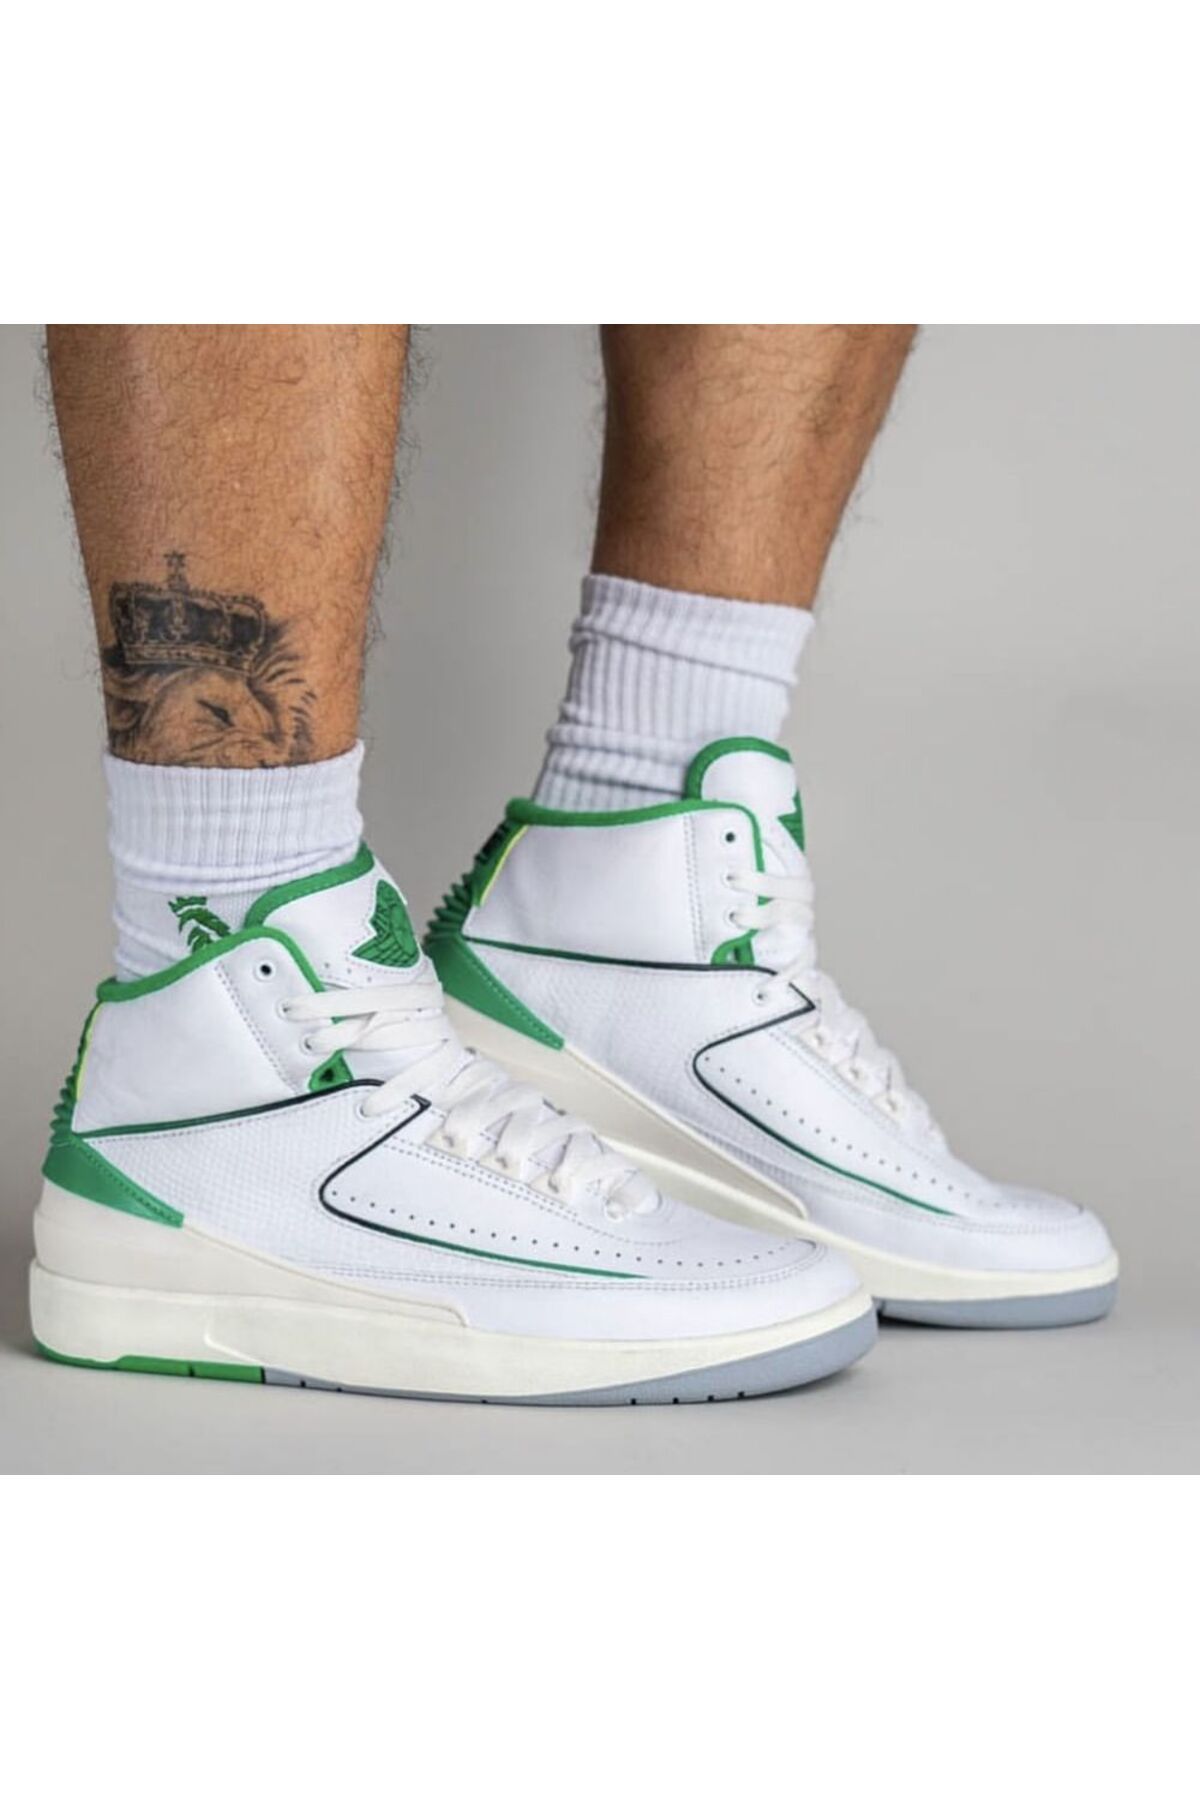 Nike Air Jordan 2 Retro Lucky Green Erkek Basketbol Ayakkabısı-dr8884-103